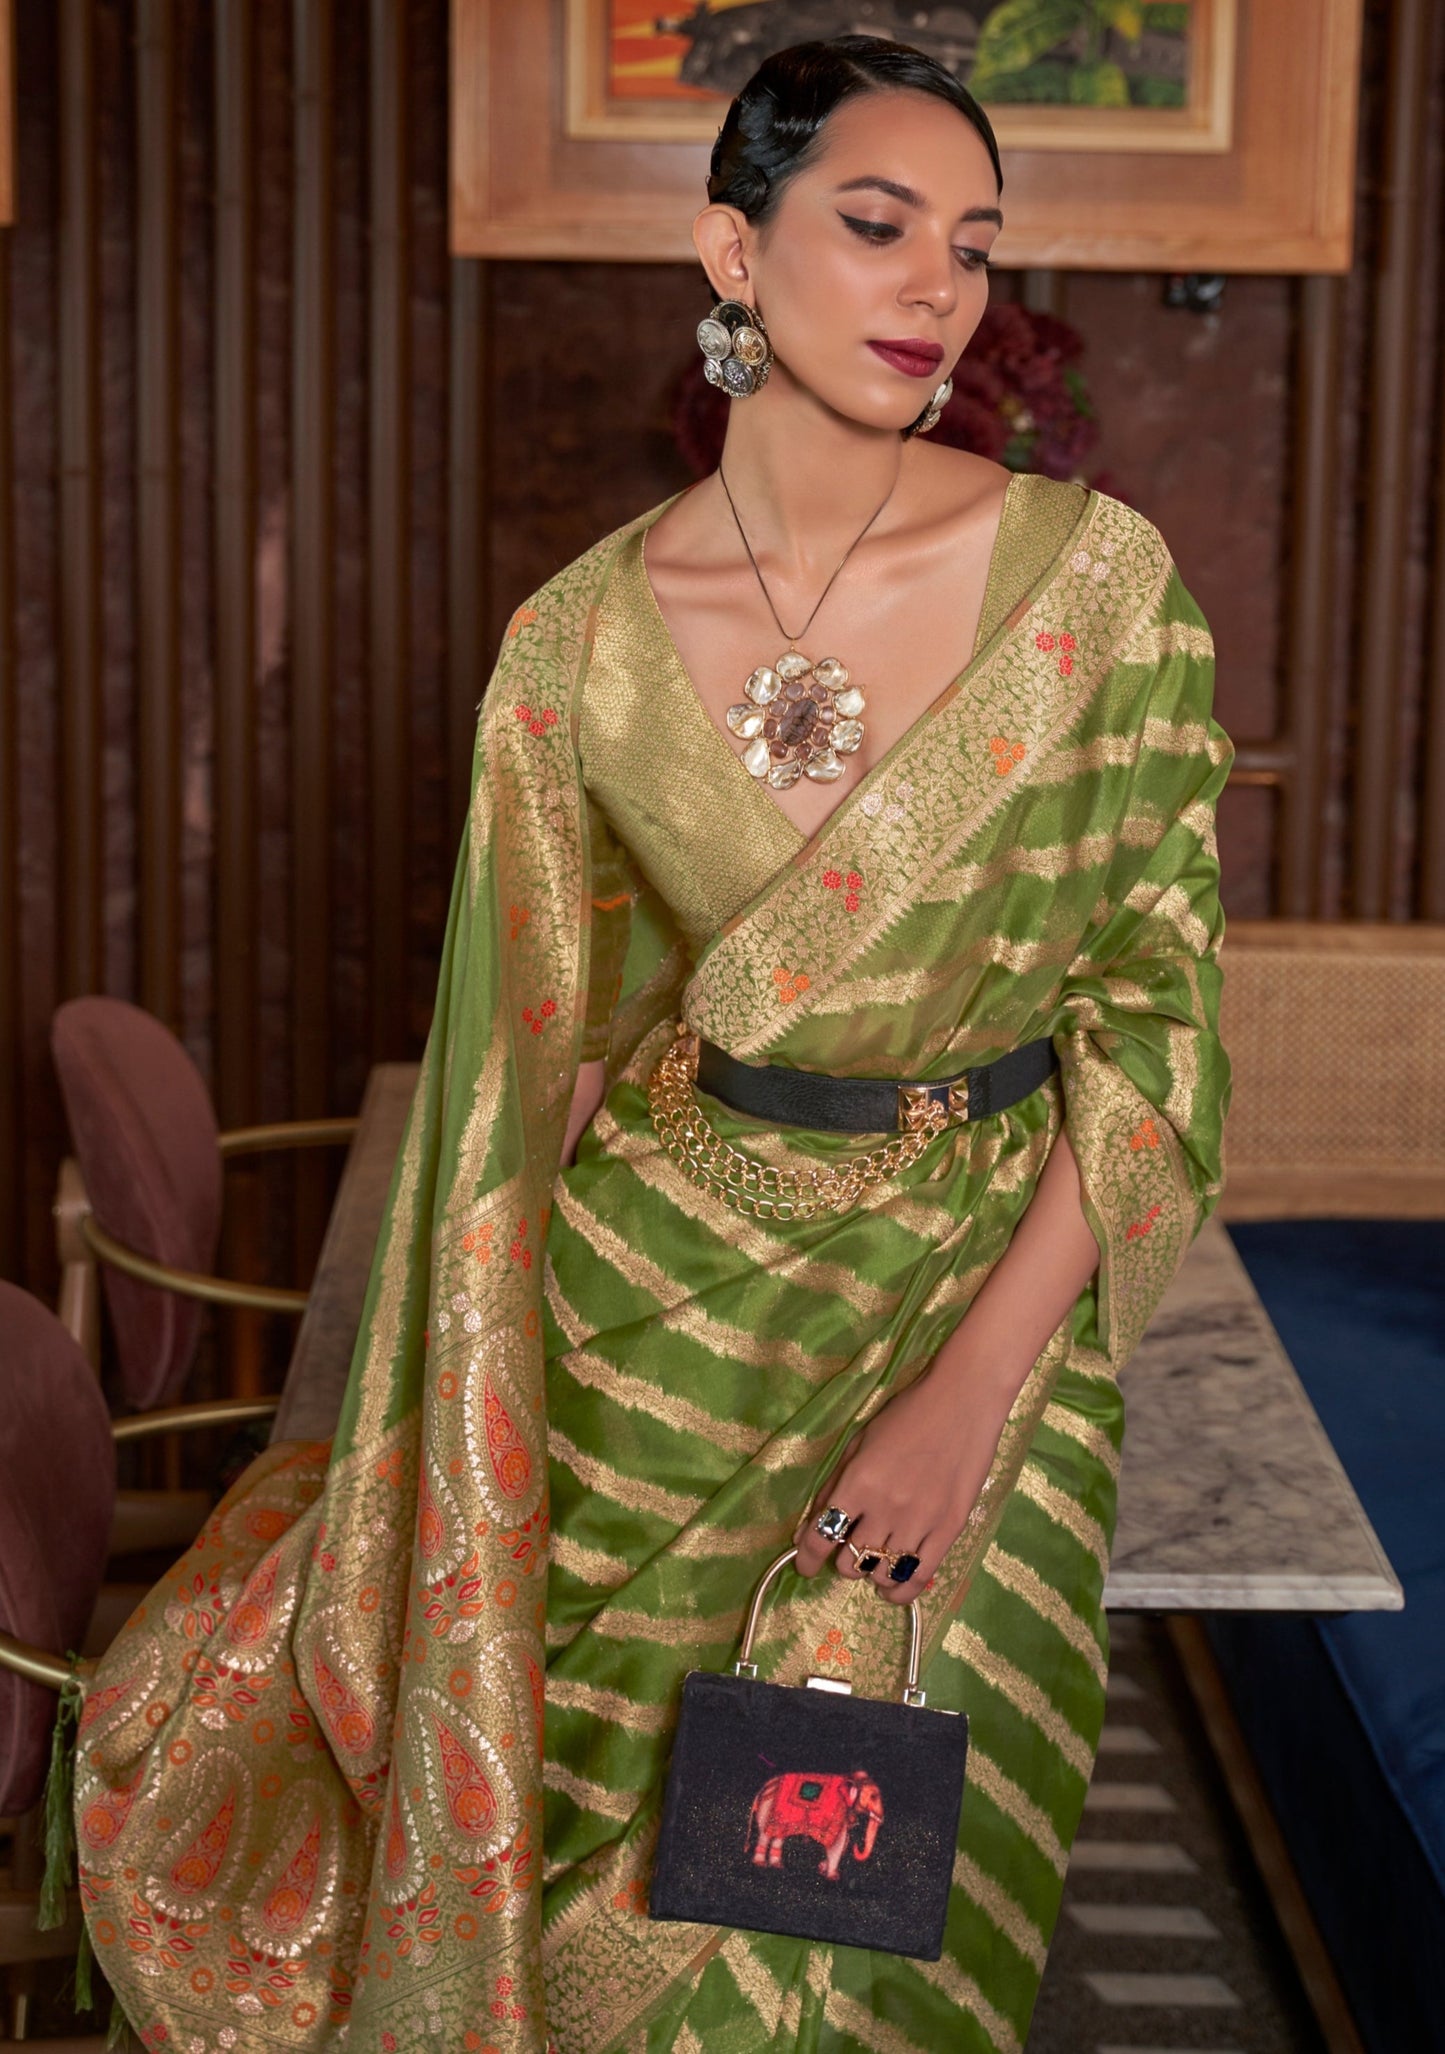 Pure handloom banarasi organza green wedding saree online india with meenakari work.